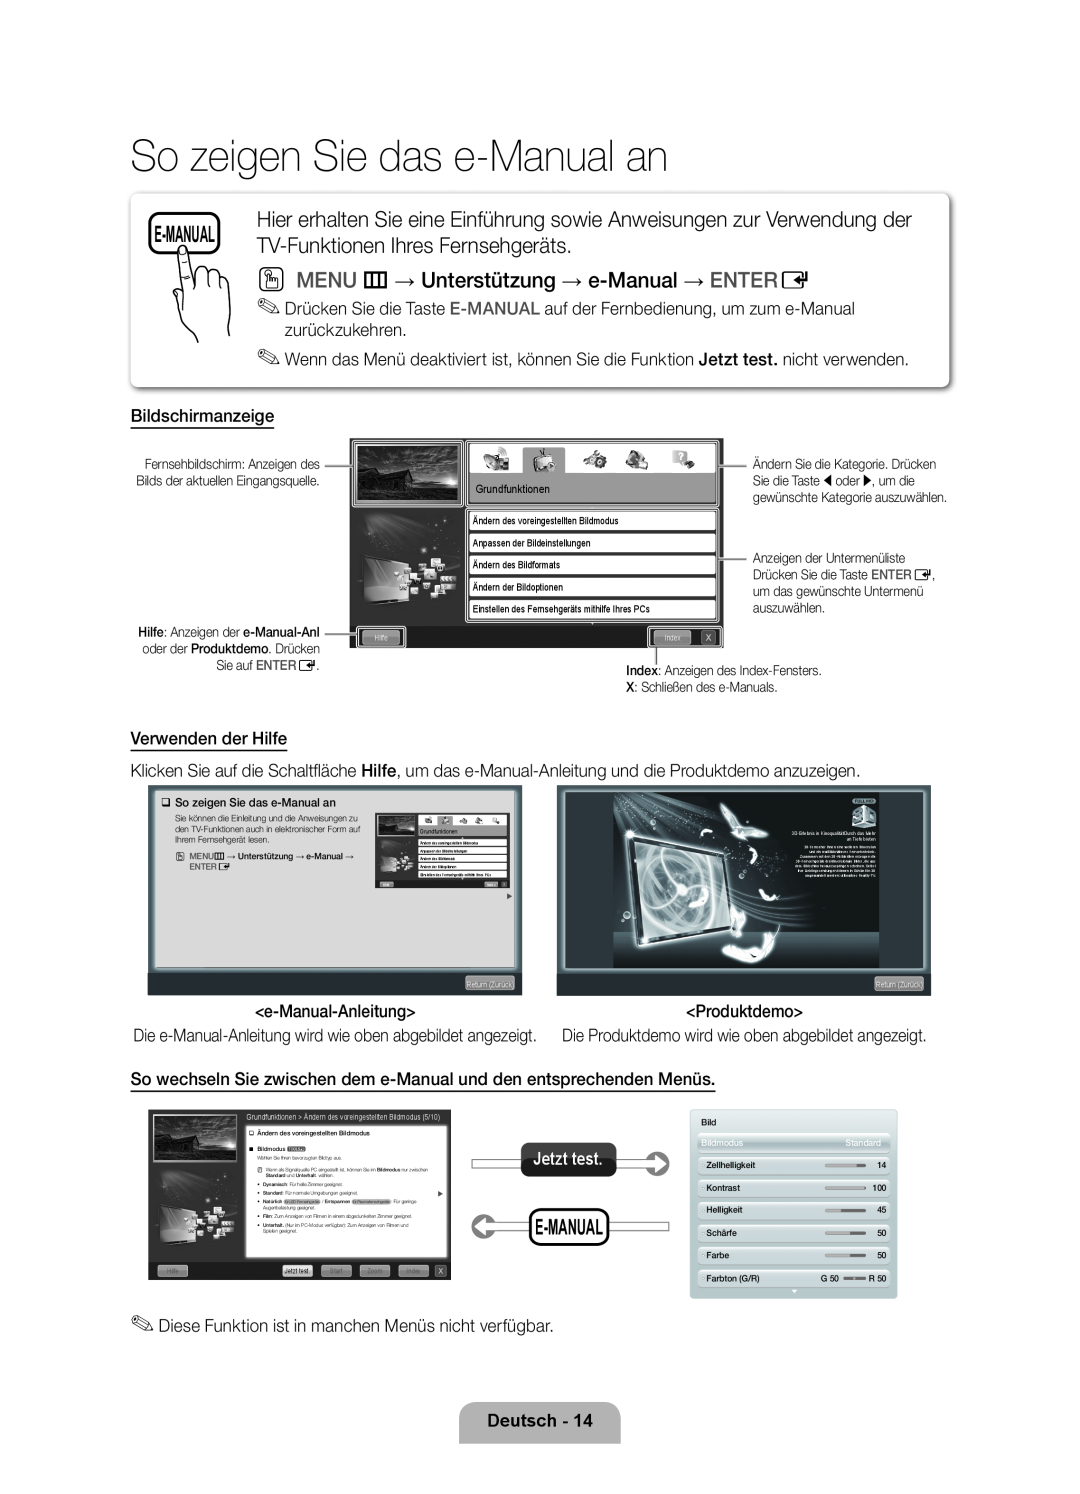 Samsung UE40D7000LSXZF So zeigen Sie das e-Manual an, TV-Funktionen Ihres Fernsehgeräts, E-Manual, Jetzt test, Deutsch 